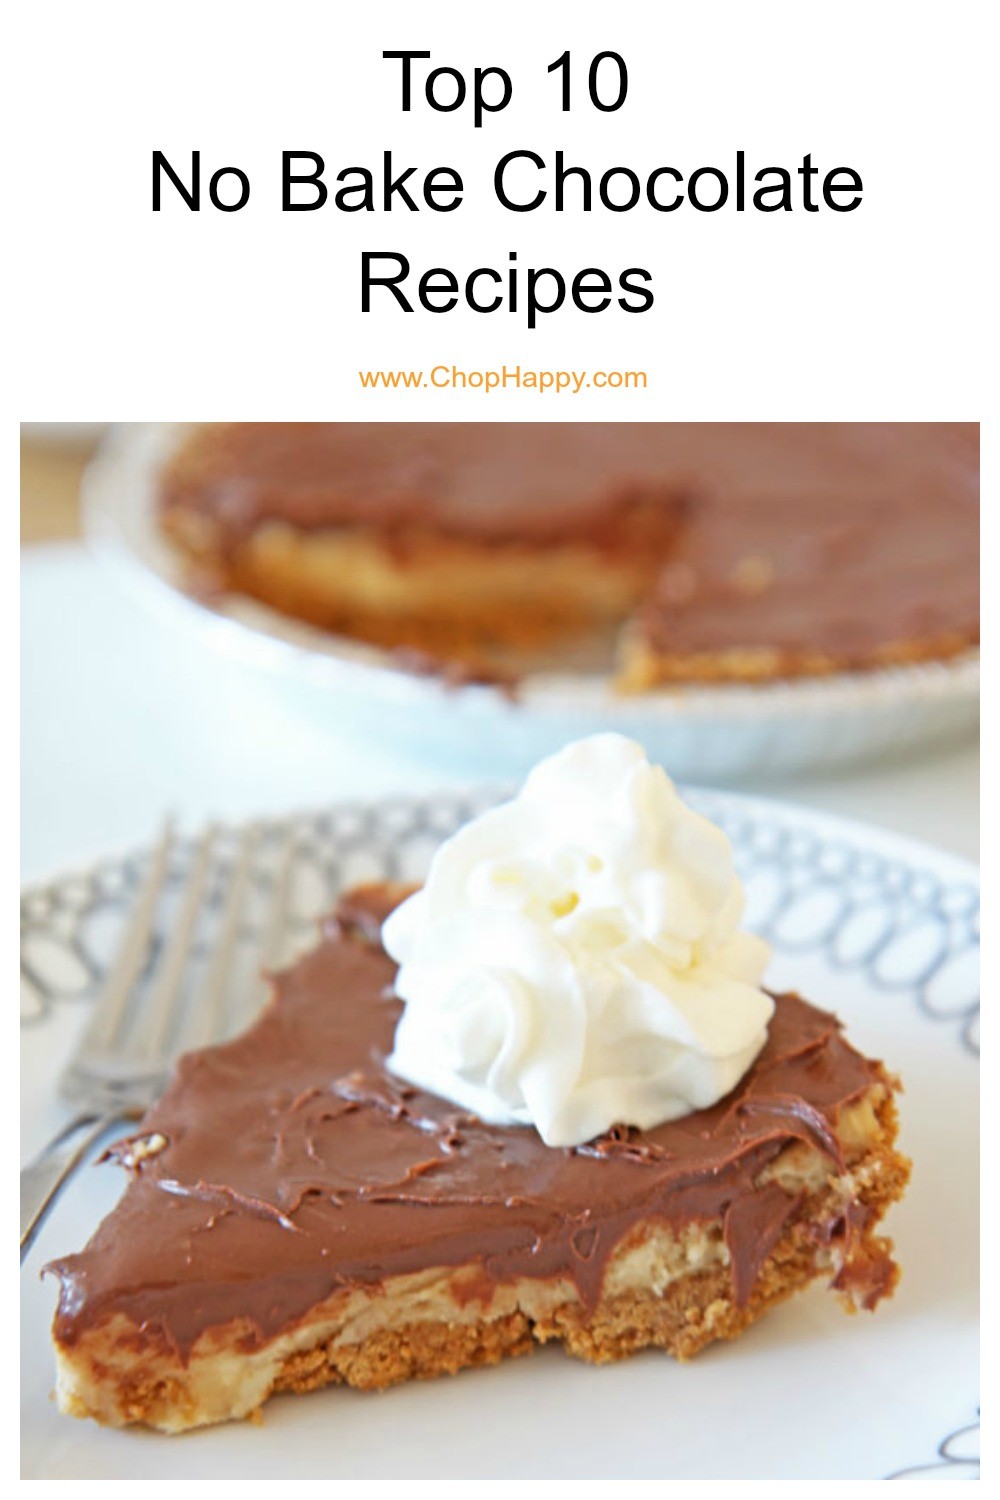 Top 10 No Bake Chocolate Recipes